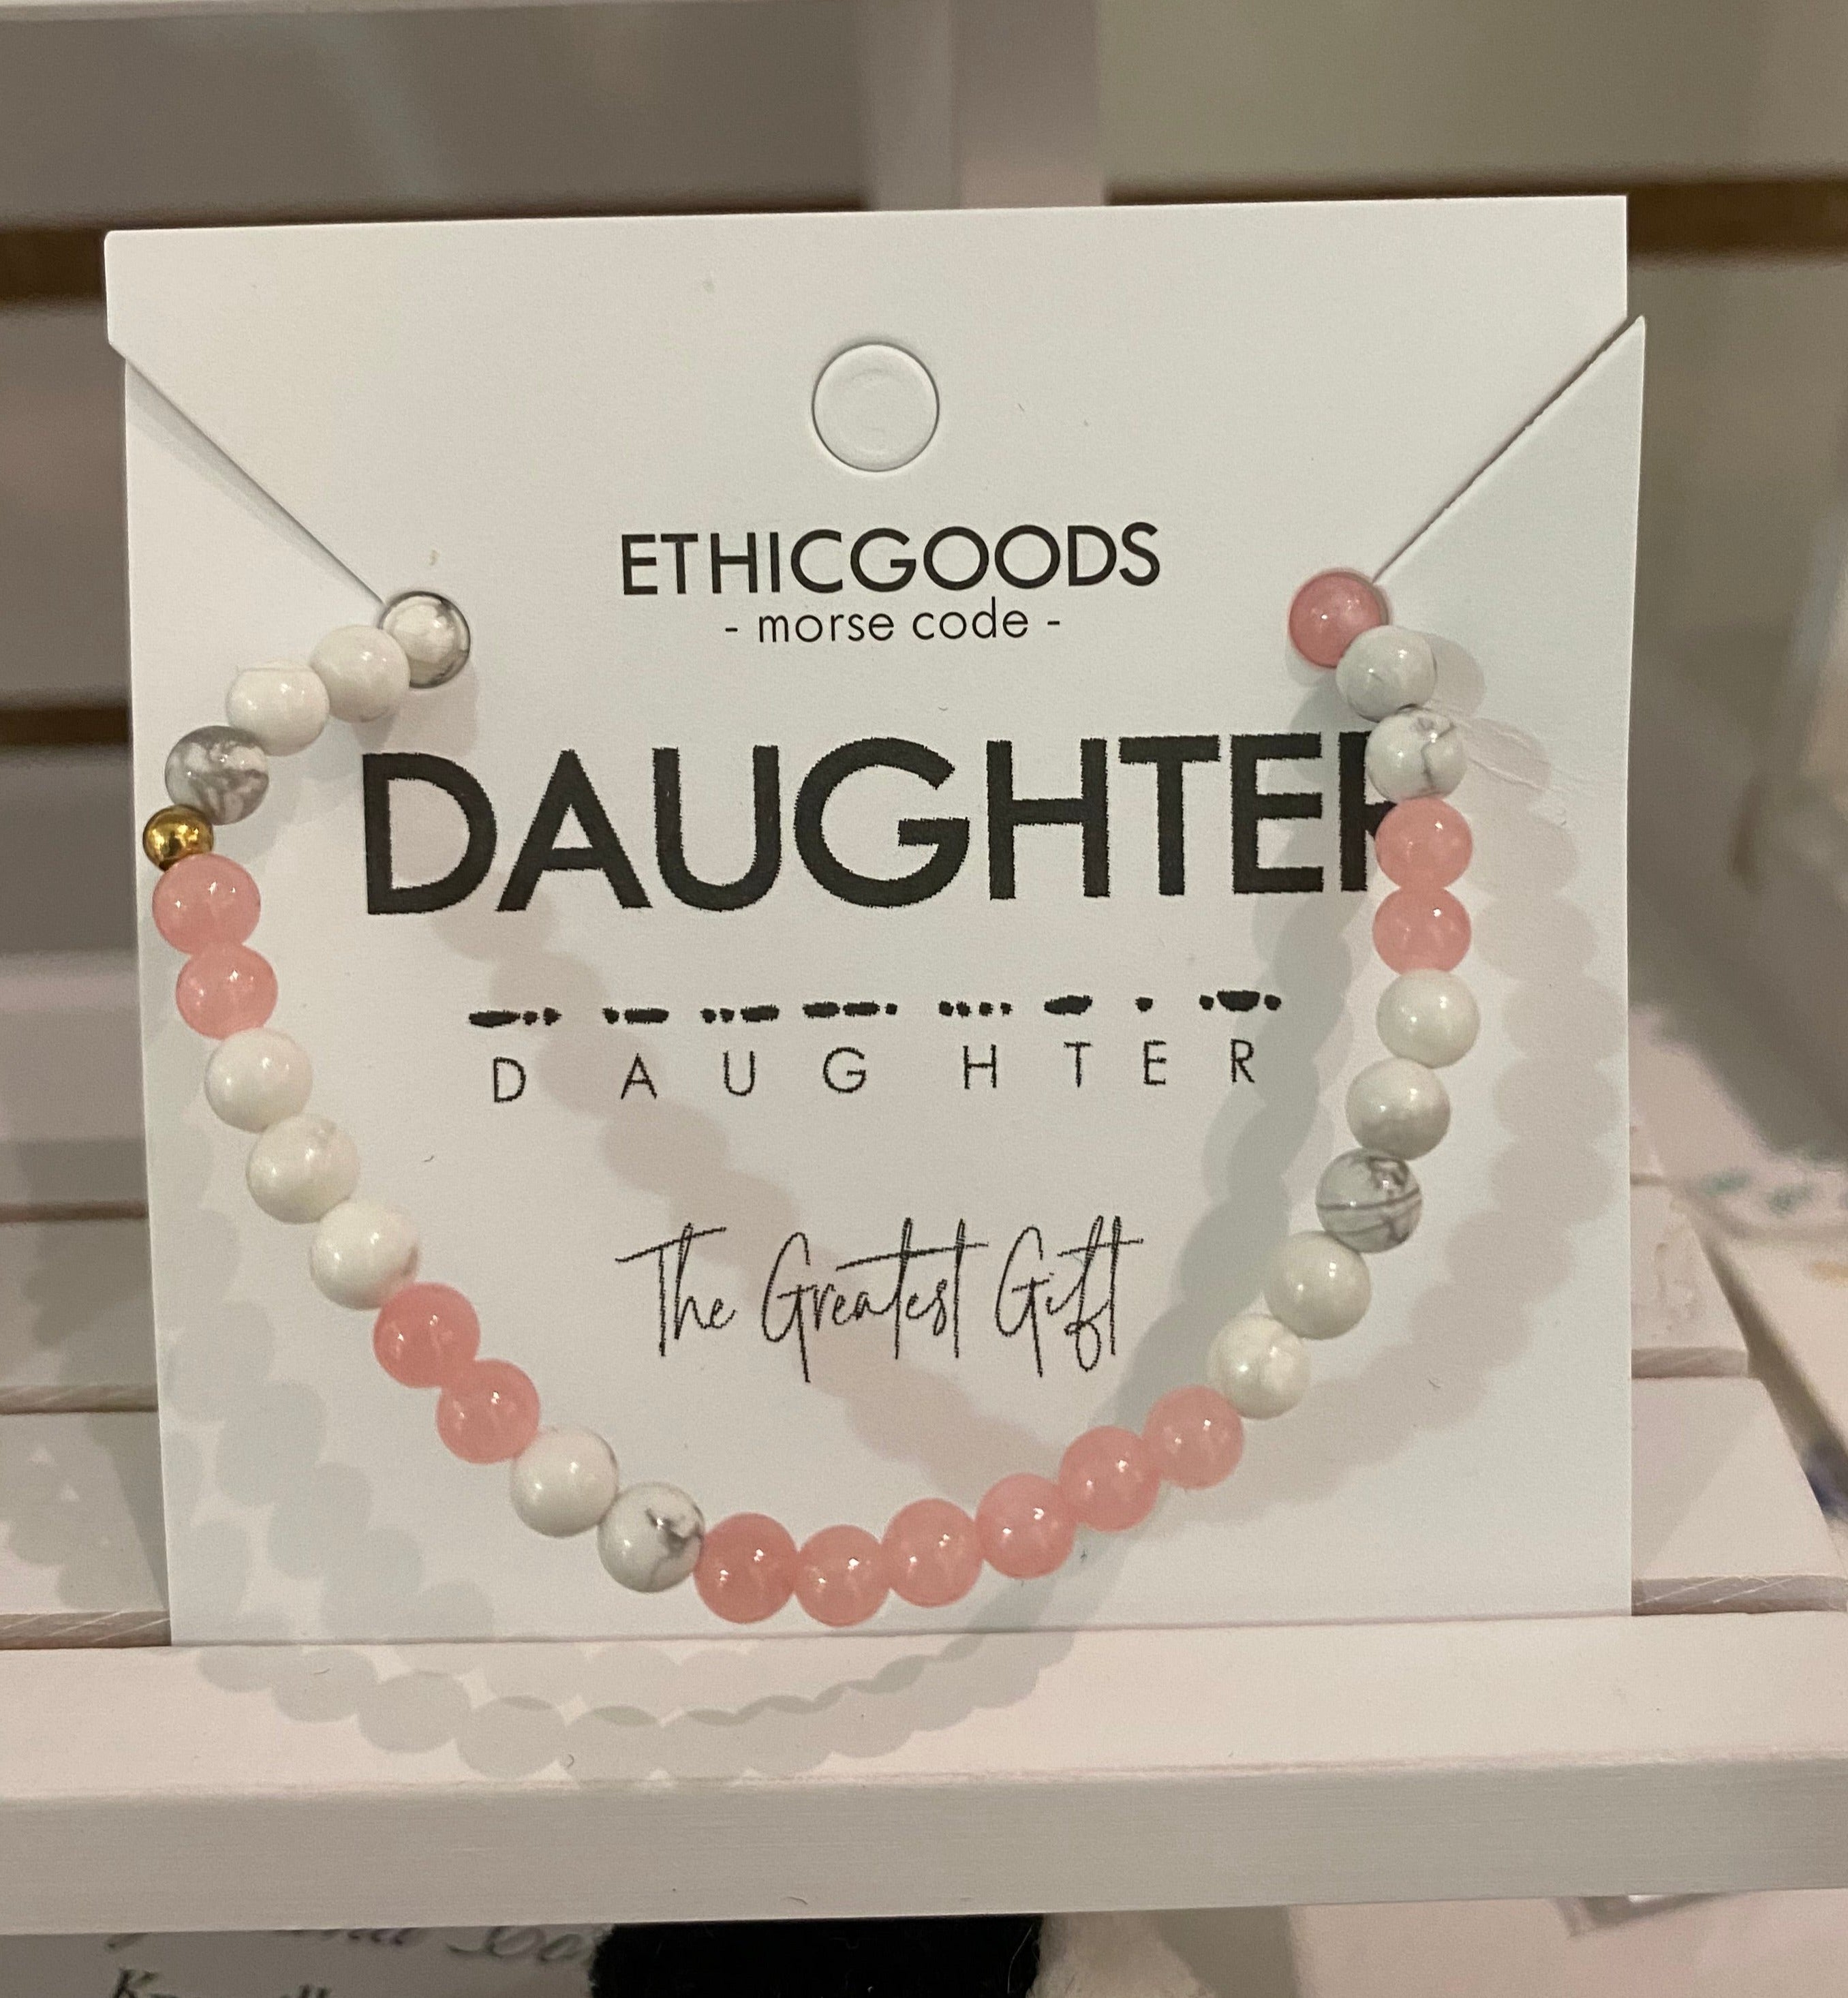 Ethic Goods Daughter Bracelet